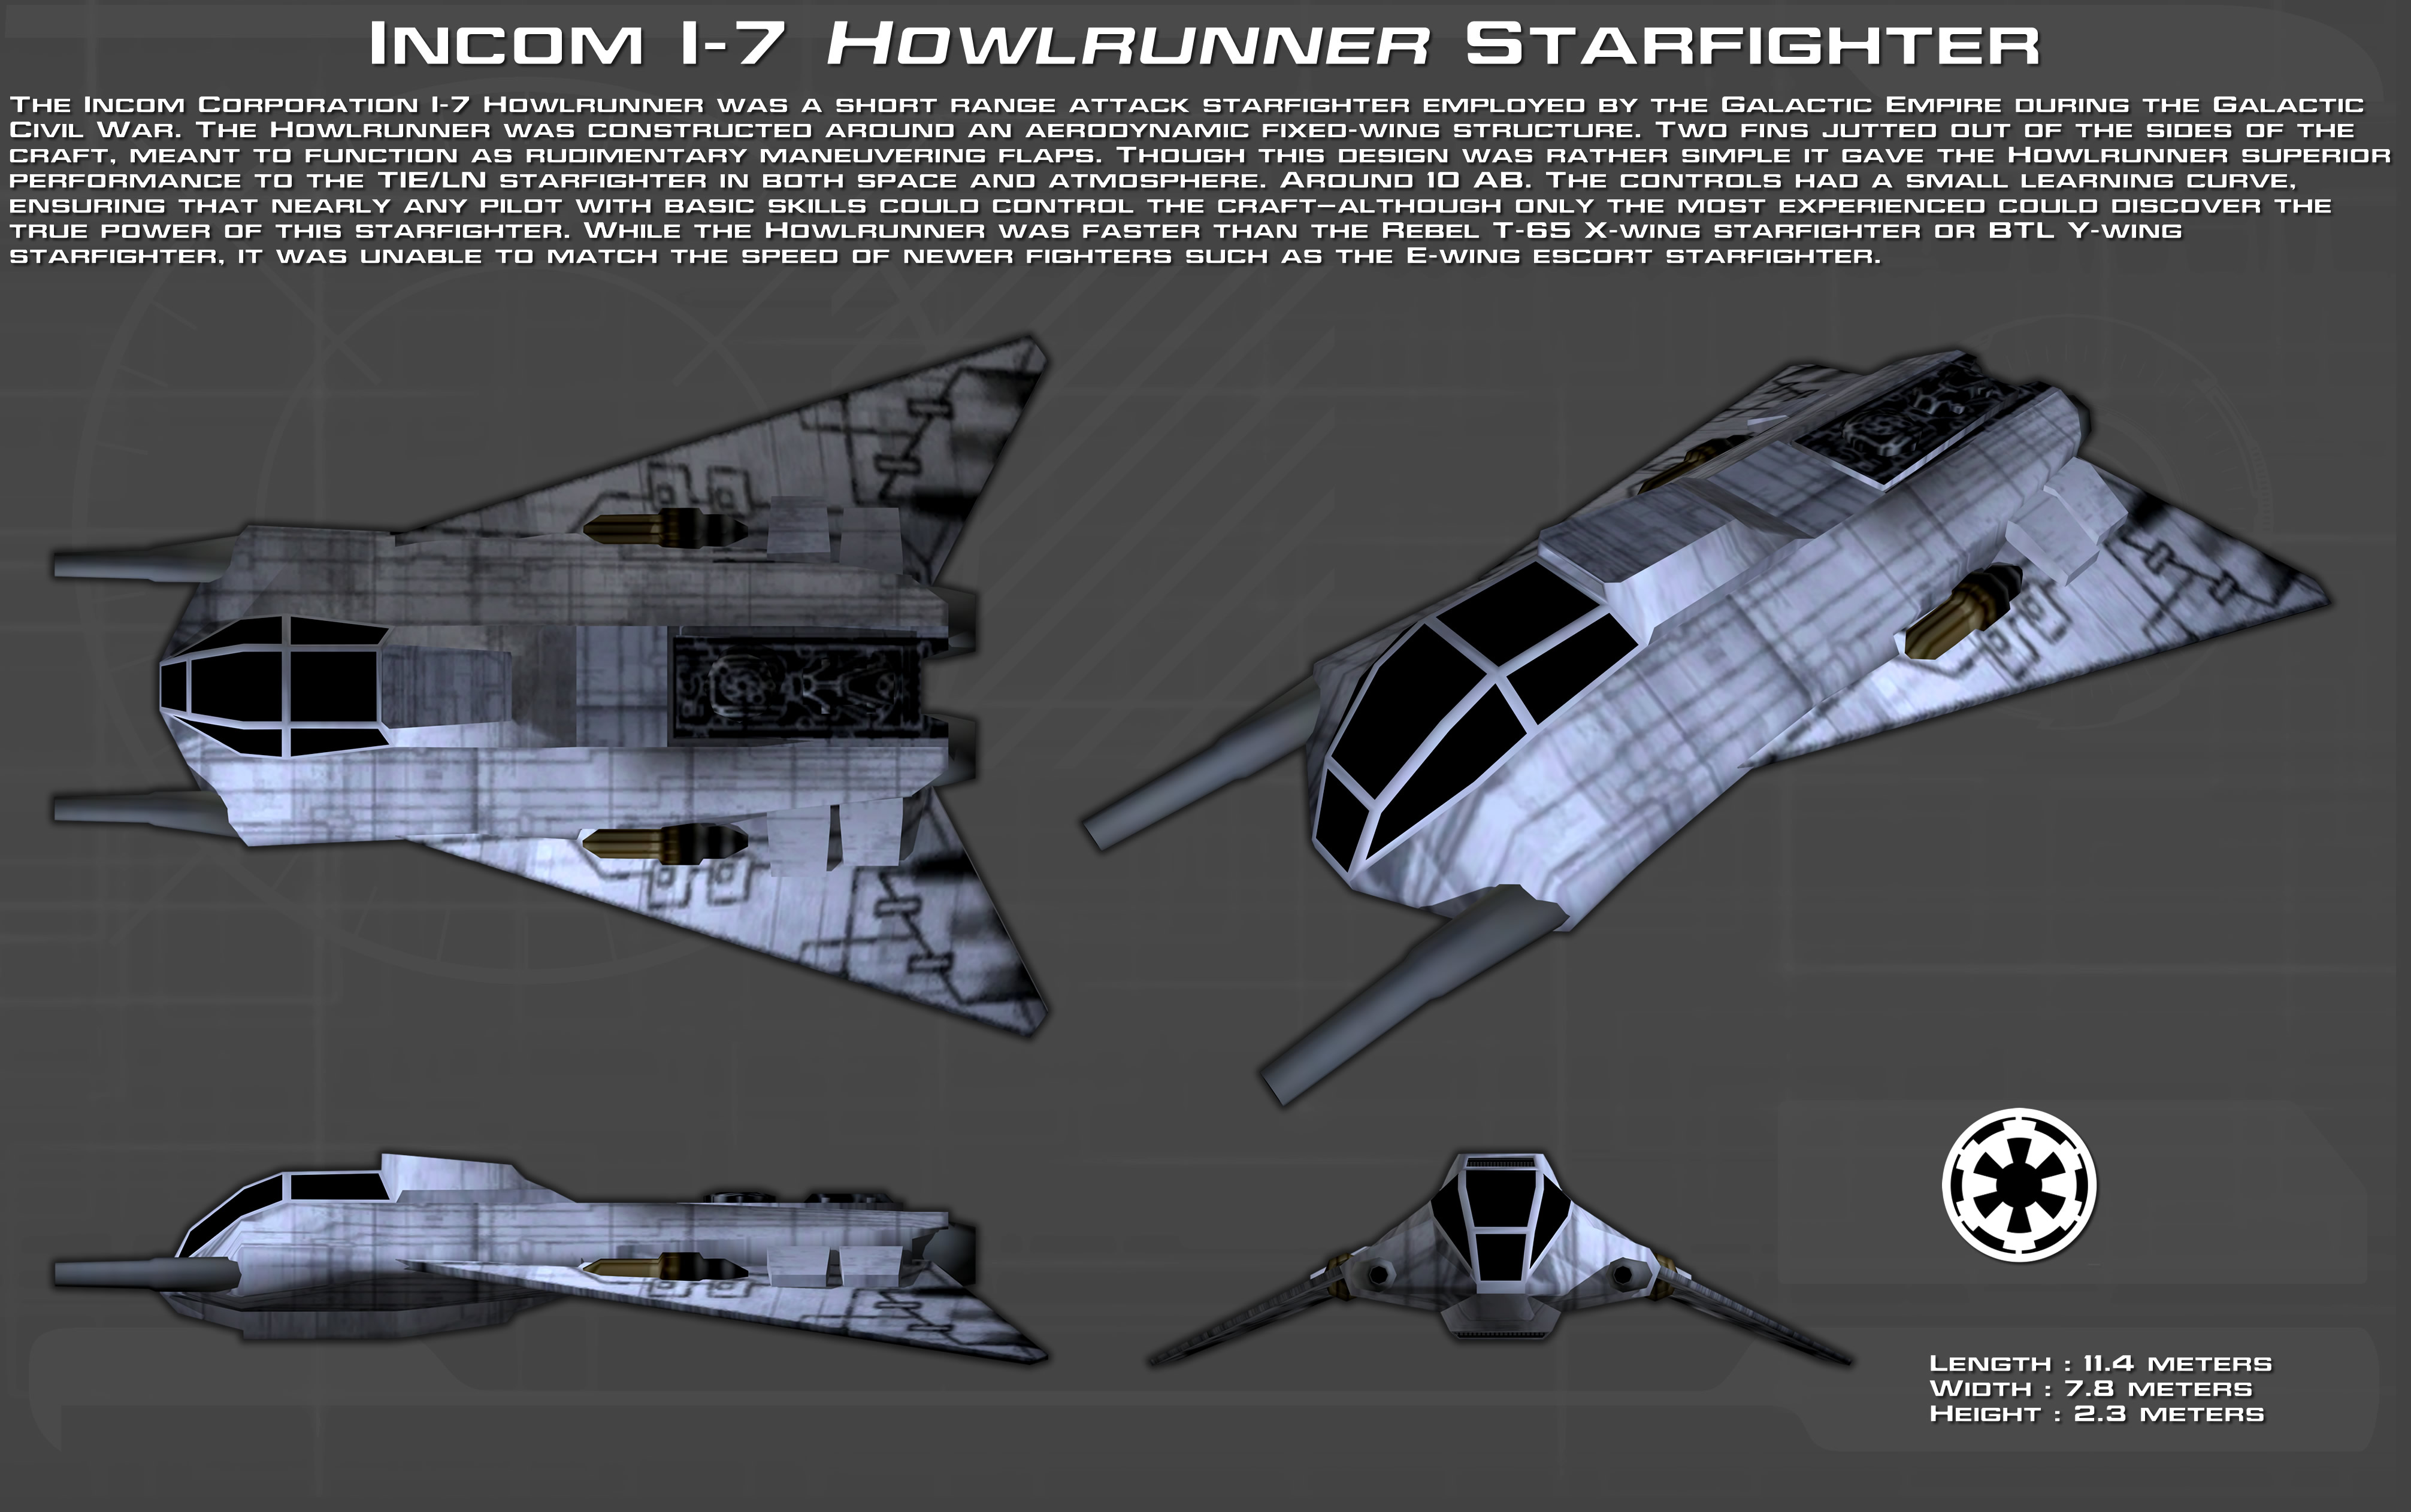 Incom I-7 Howlrunner Starfighter ortho [New]